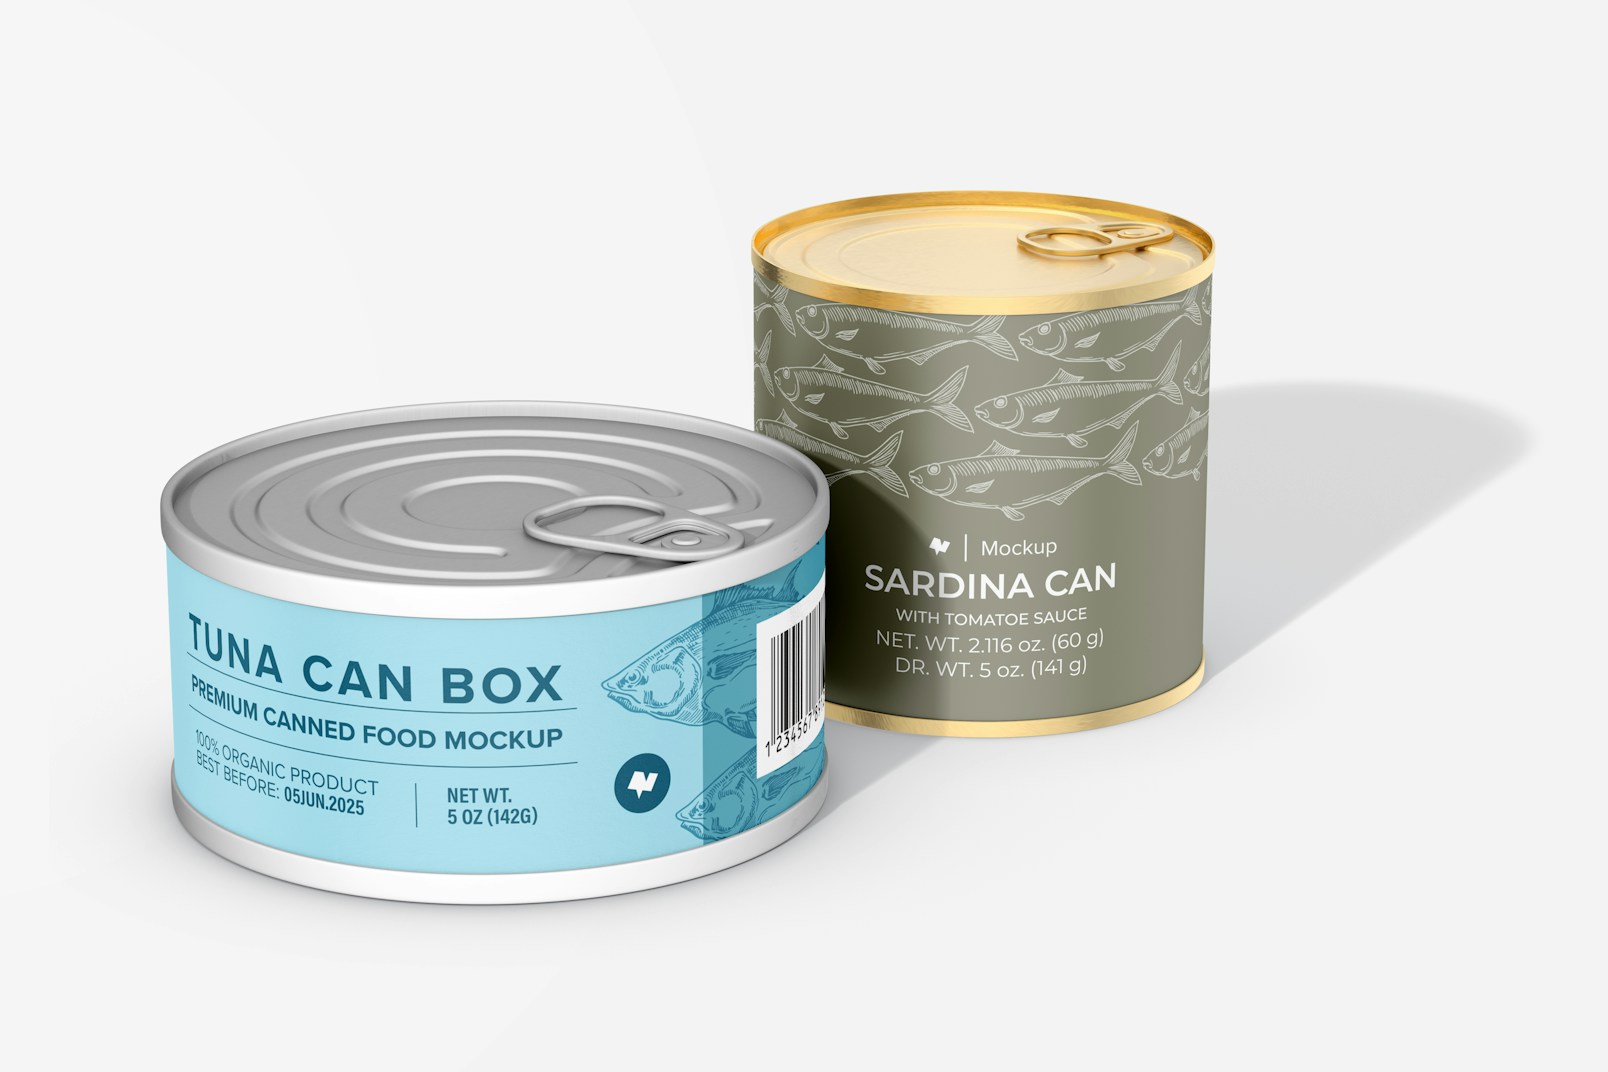 Premium Canned Food Mockup